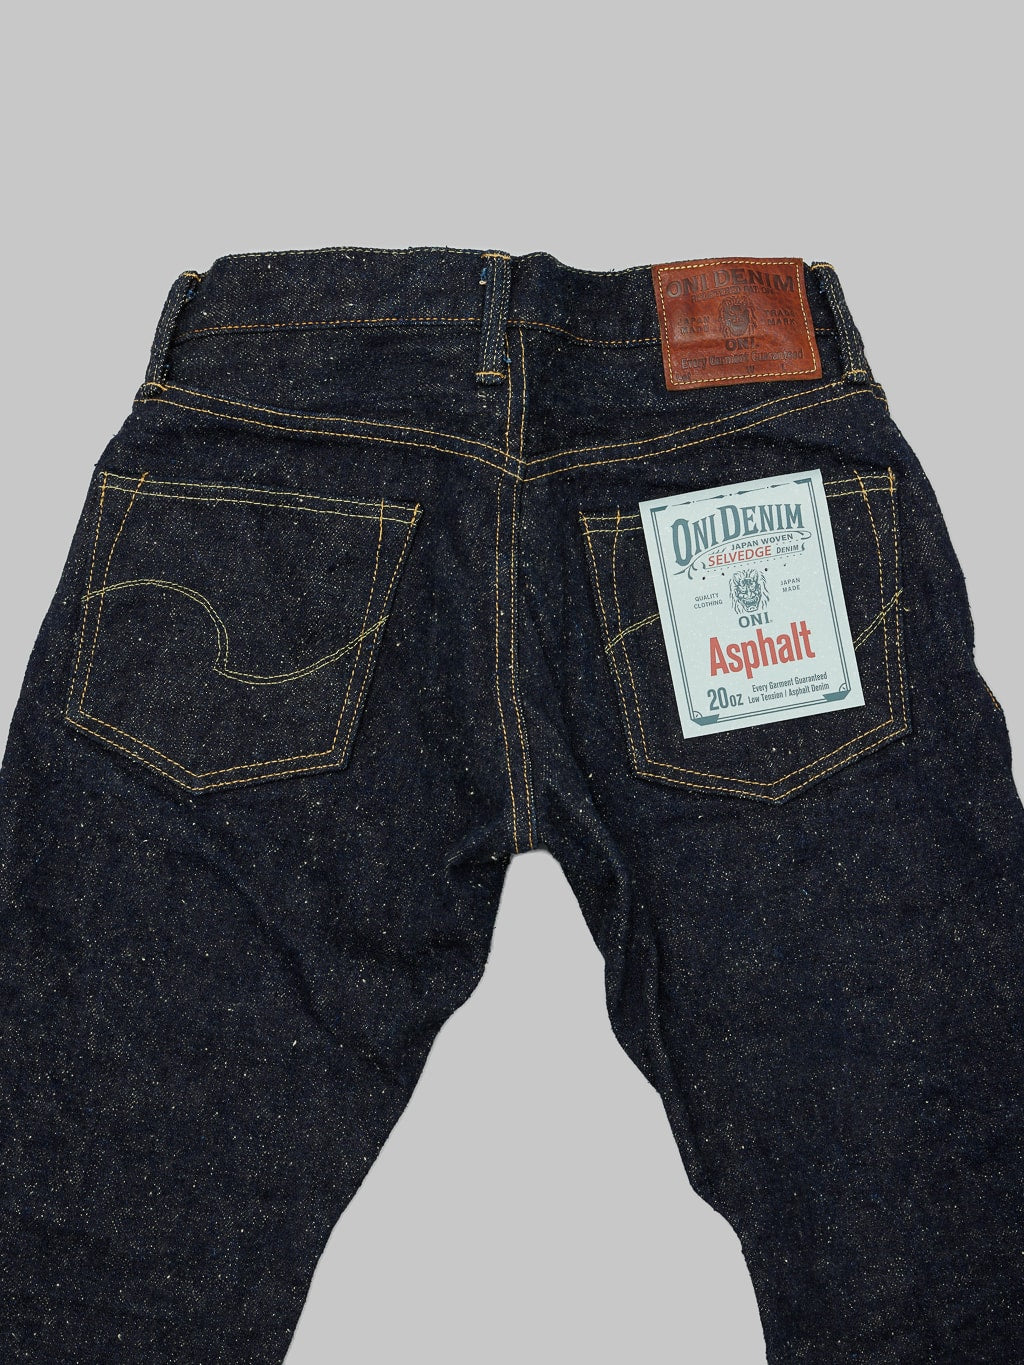 ONI Denim 622 Asphalt 20oz relaxed tapered Jeans back pockets